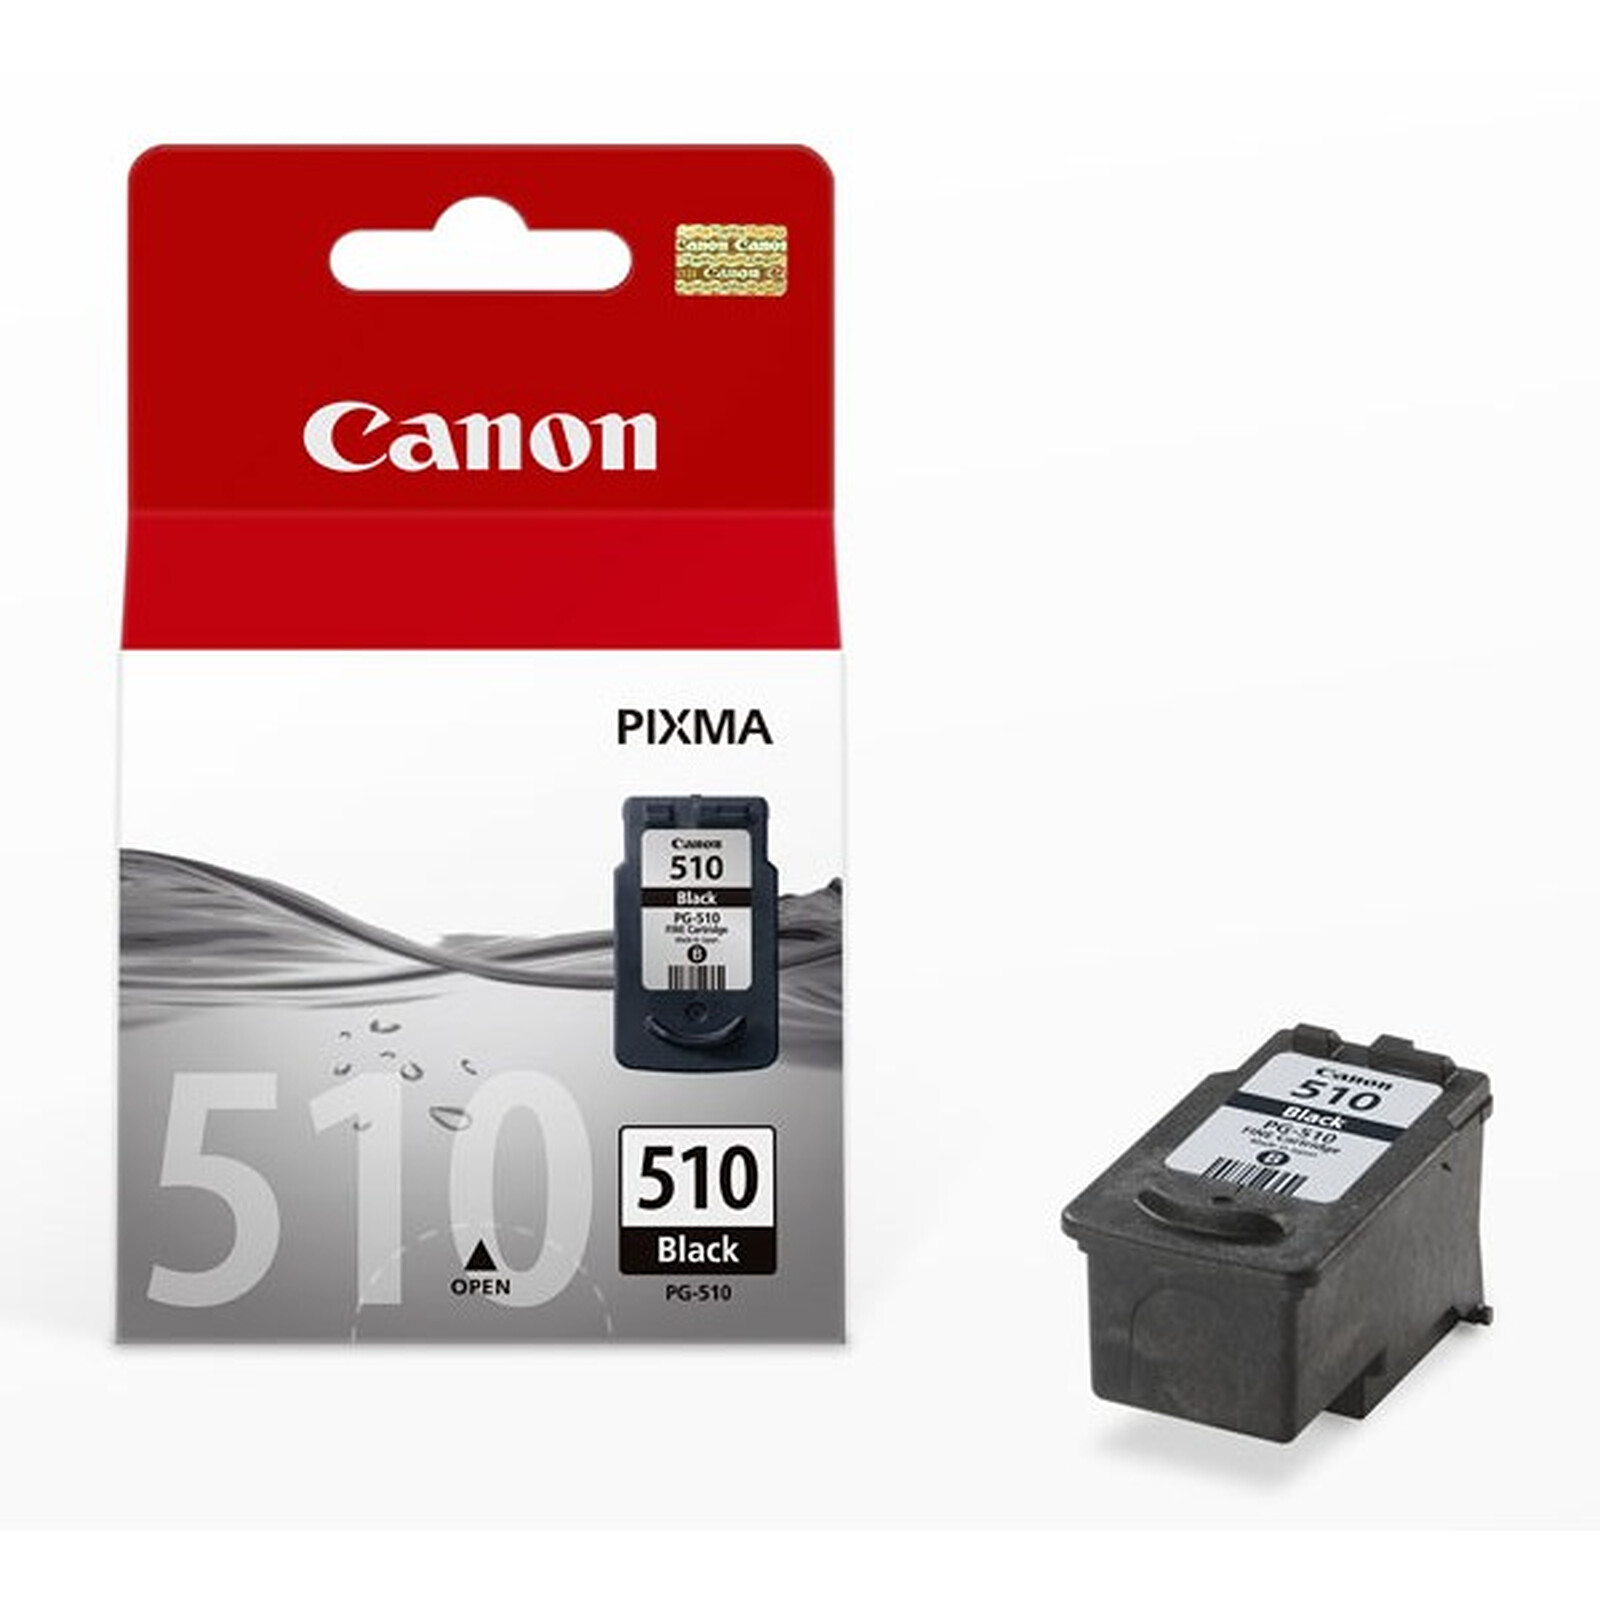 Cartouche d'encre noire Canon PG-545 — Boutique Canon France